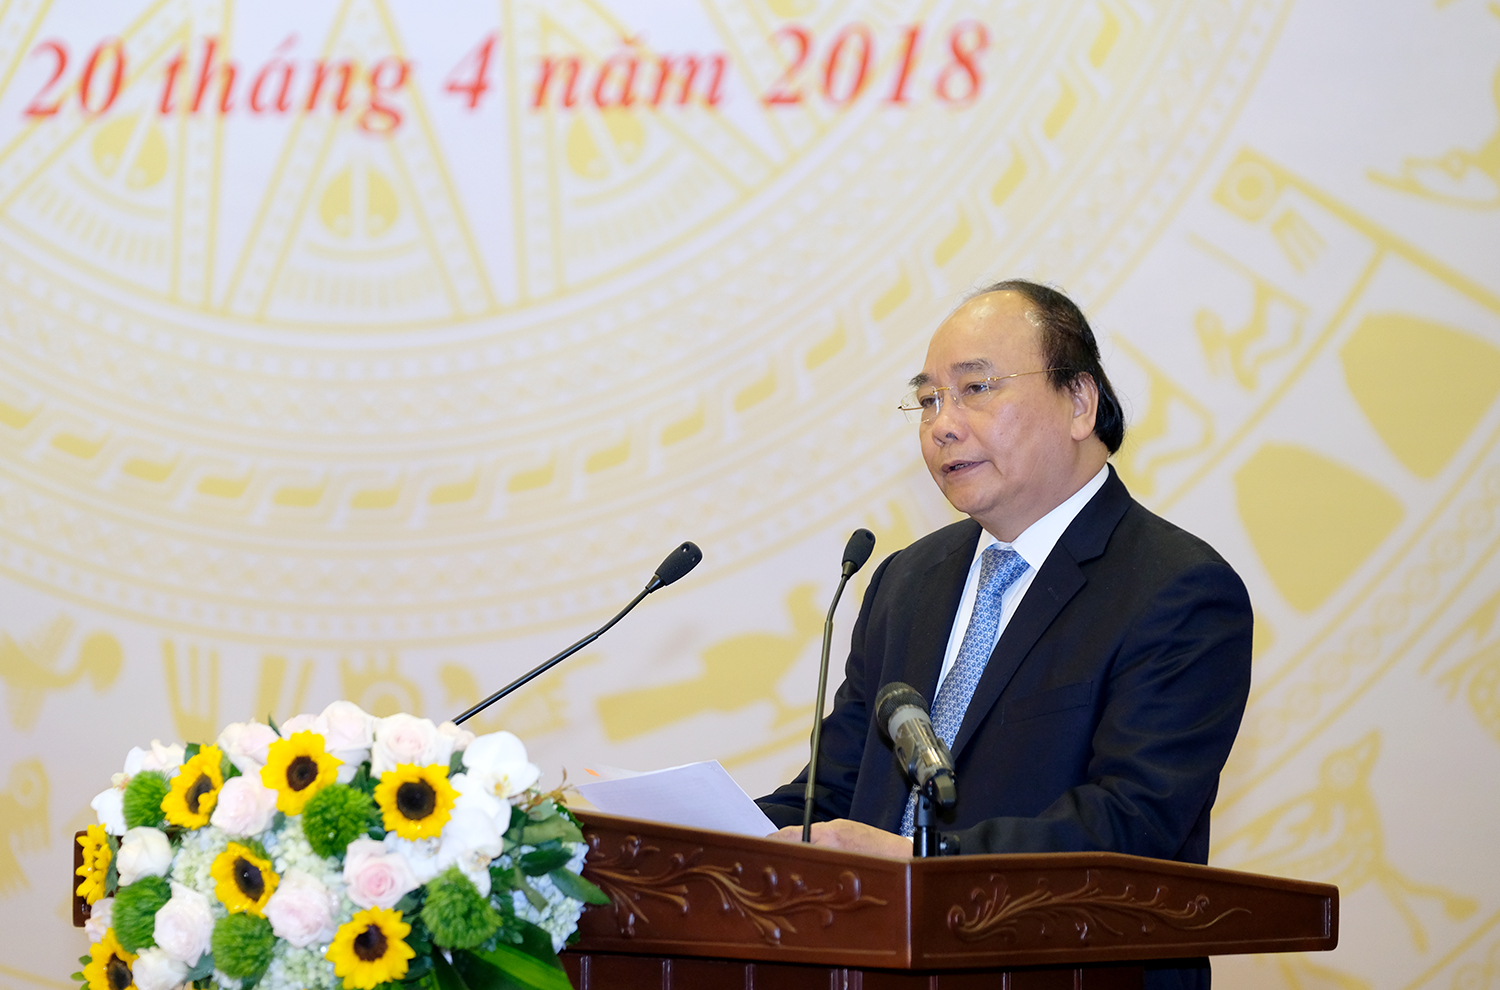 Thủ tướng Nguyễn Xuân Phúc phát biểu tại Hội nghị - Ảnh: VGP/Quang Hiếu.